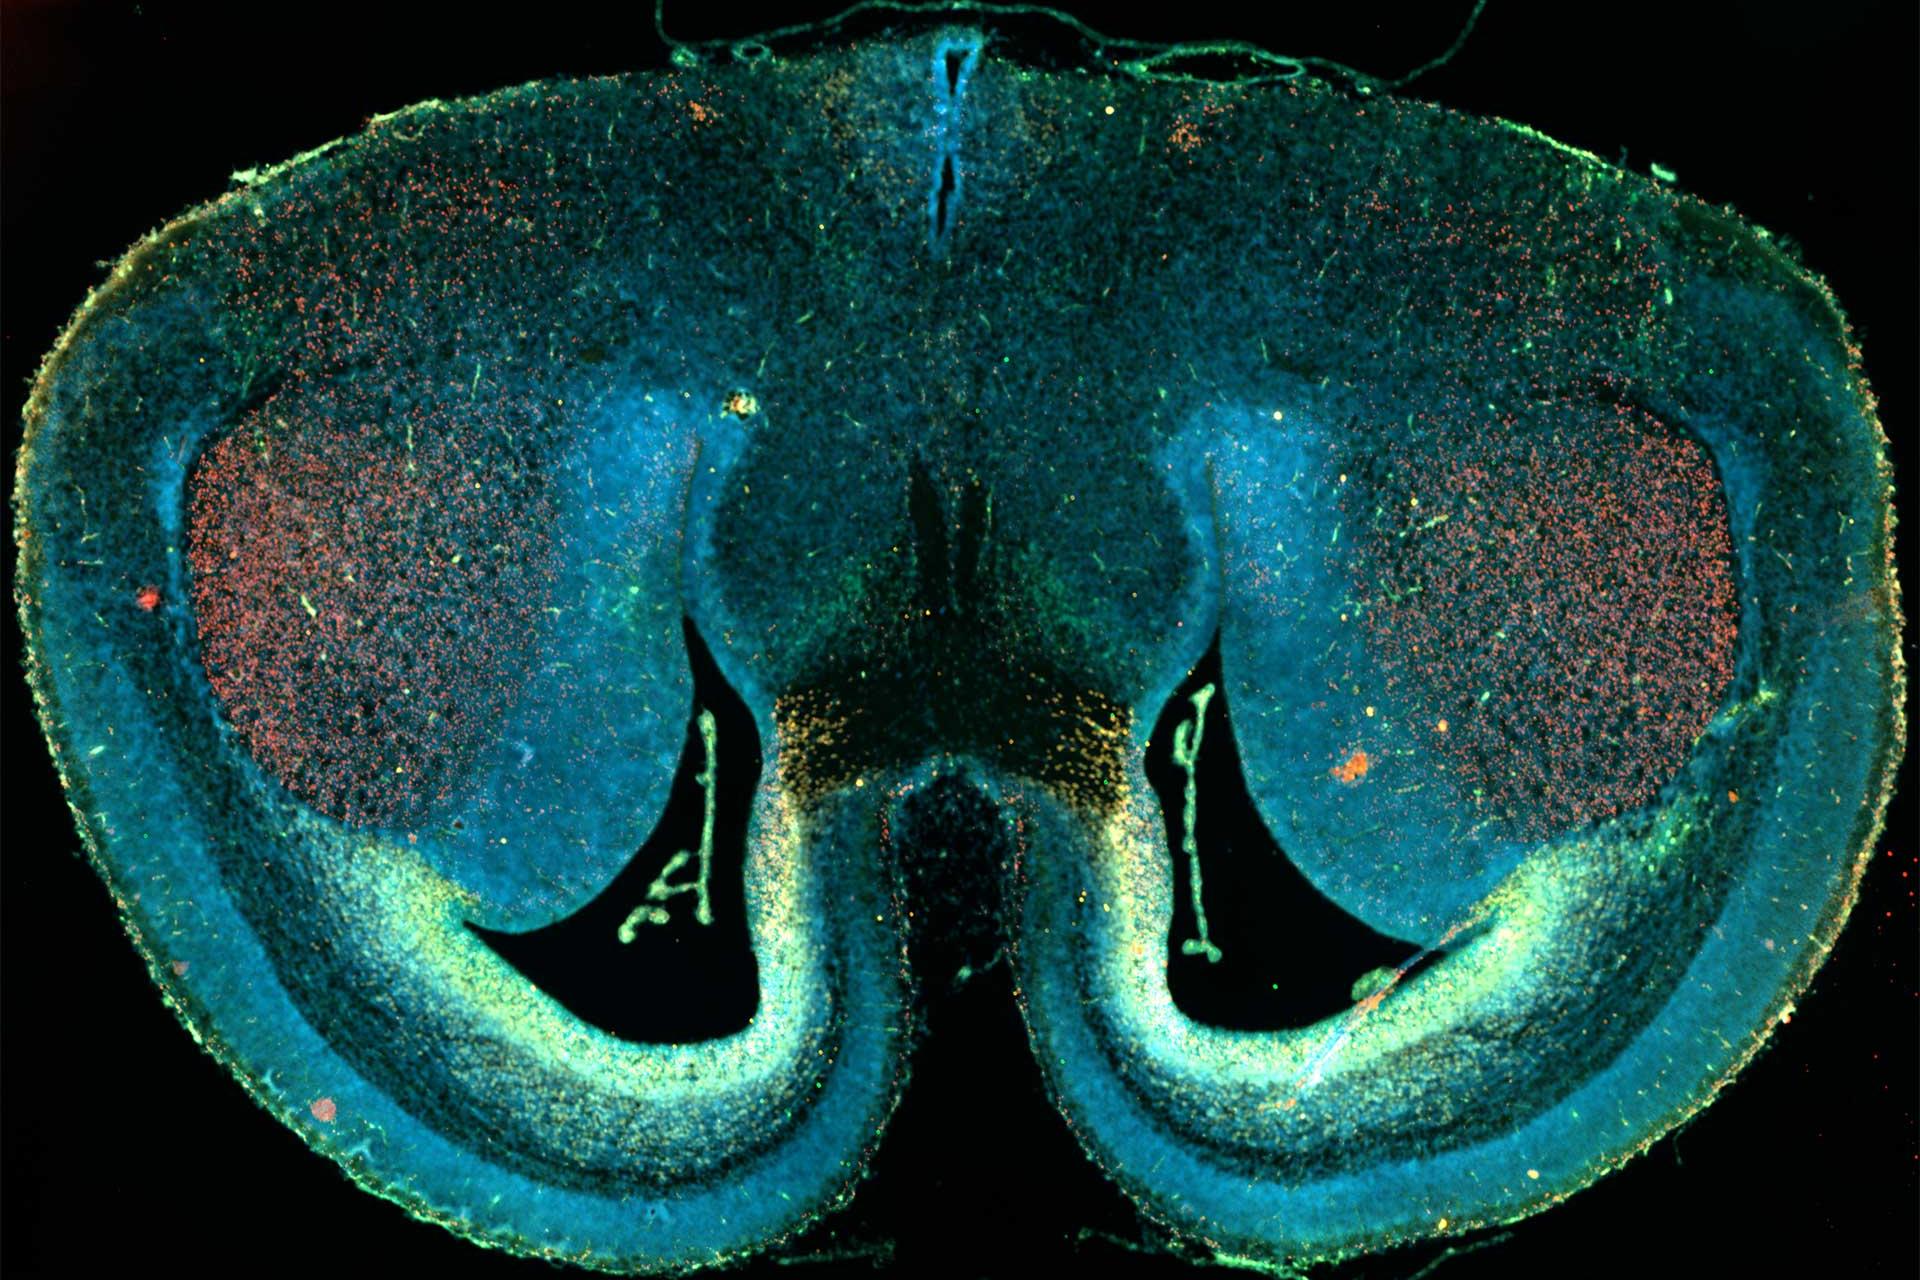 Mäusehirnschnitt, aufgenommen mit Weitfeld-Fluoreszenzmikroskopie und Kachelaufnahmen. Probe mit freundlicher Genehmigung von D. Mi, School of Life Sciences, Tsinghua University, China